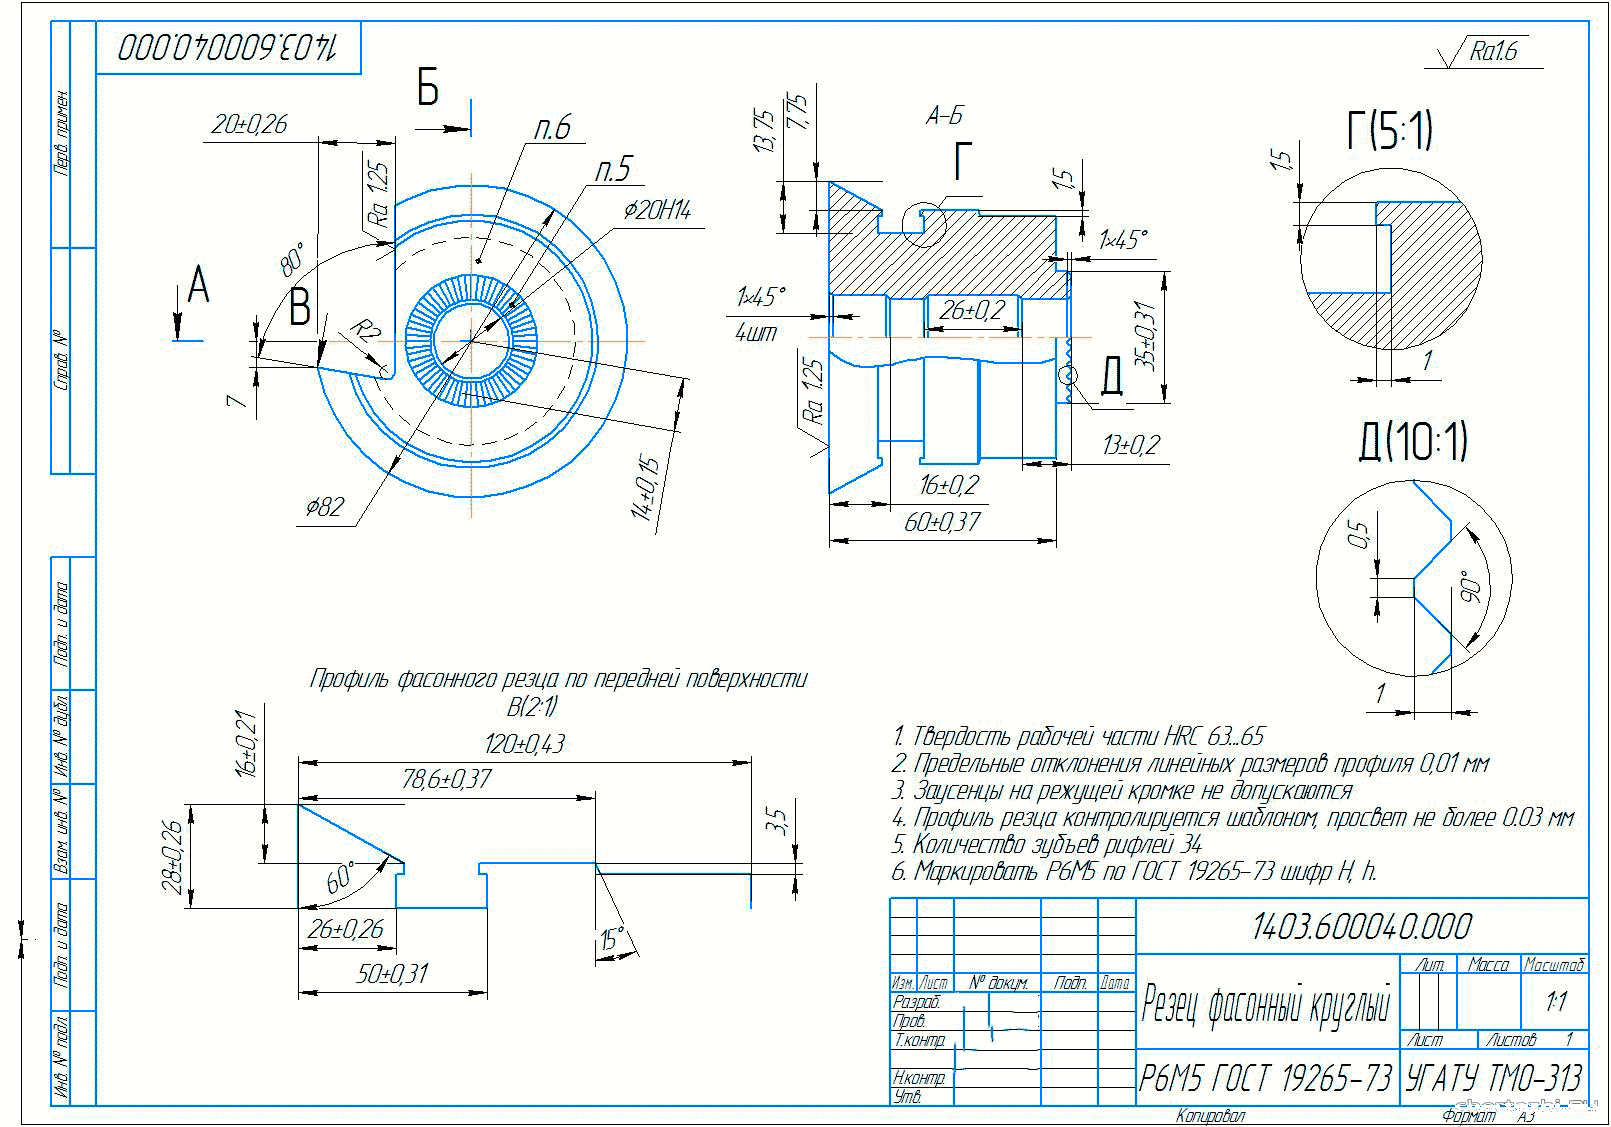 Курсовой проект - Расчет фасонного профиля инструментов и построение их чертежа